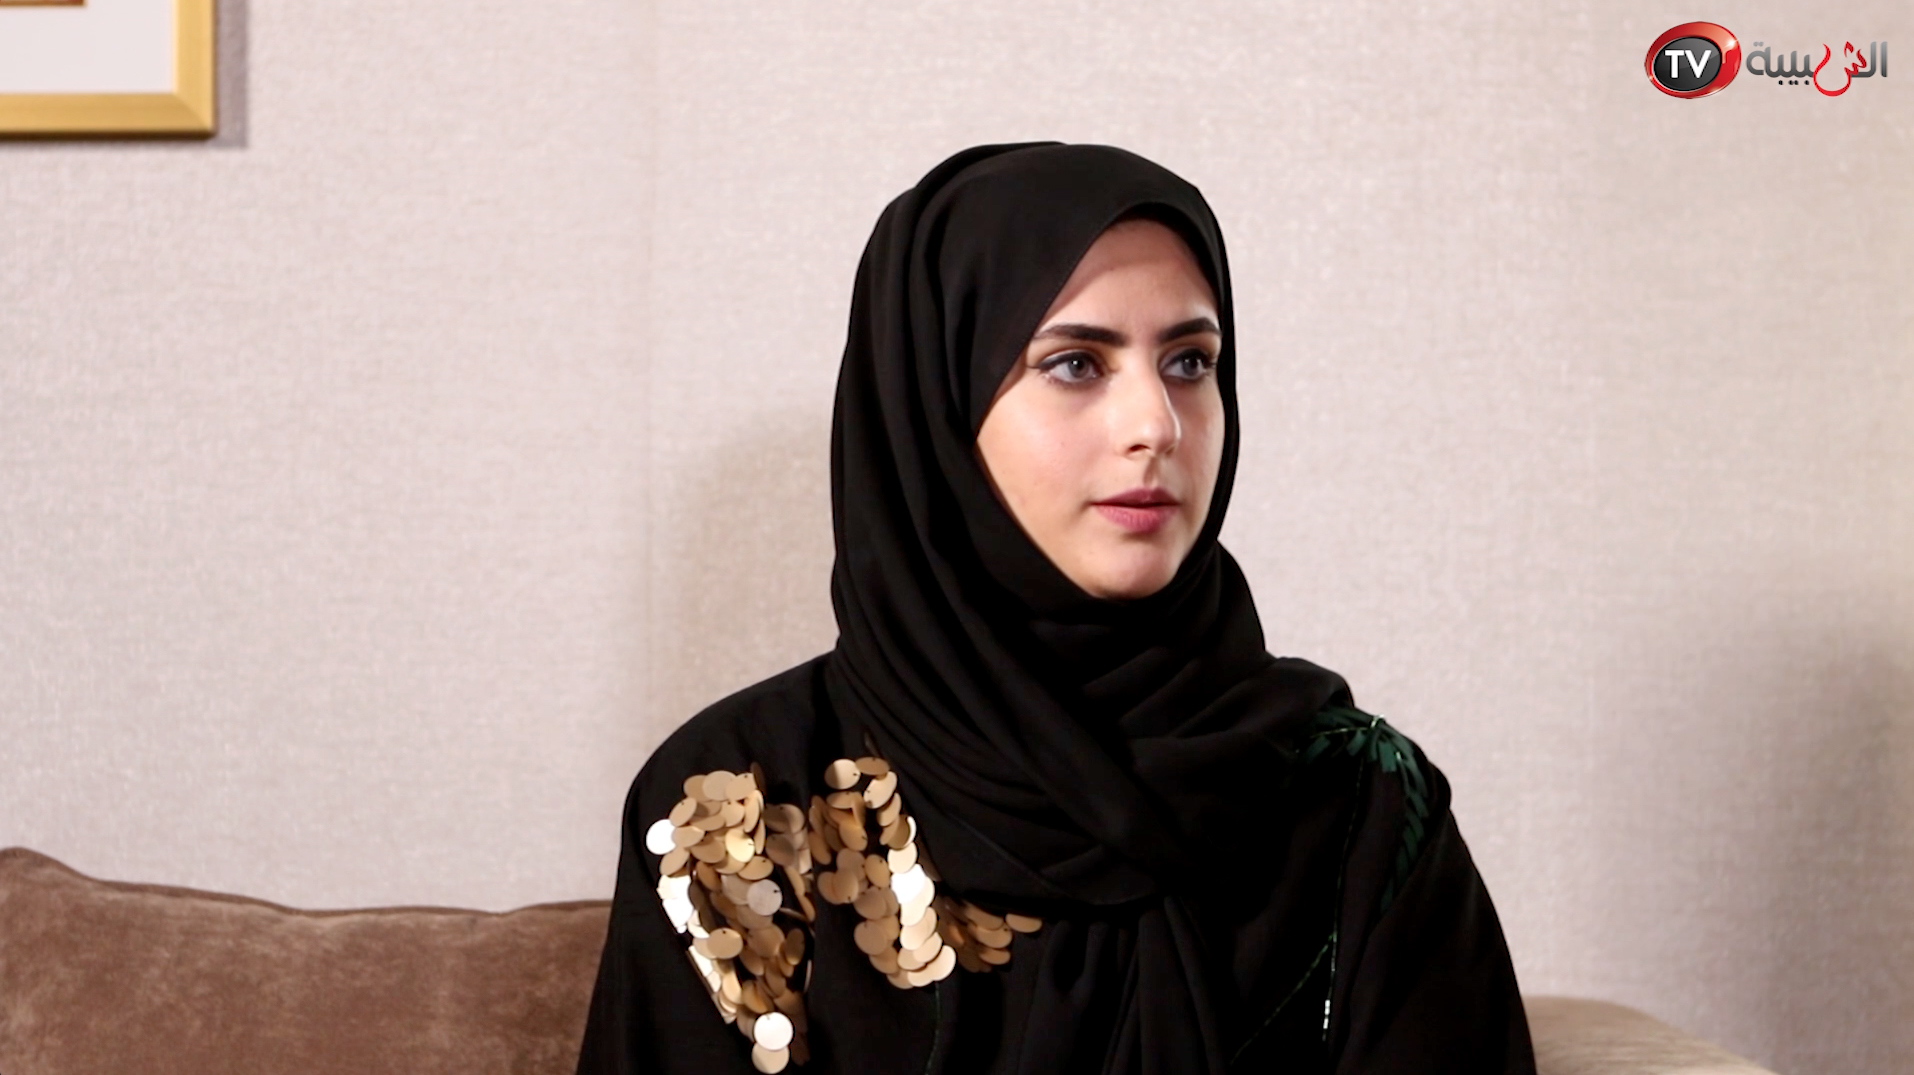 بالفيديو: "الوهيبية" تتحدث للشبيبة عن منافستها لملكات وأميرات العرب